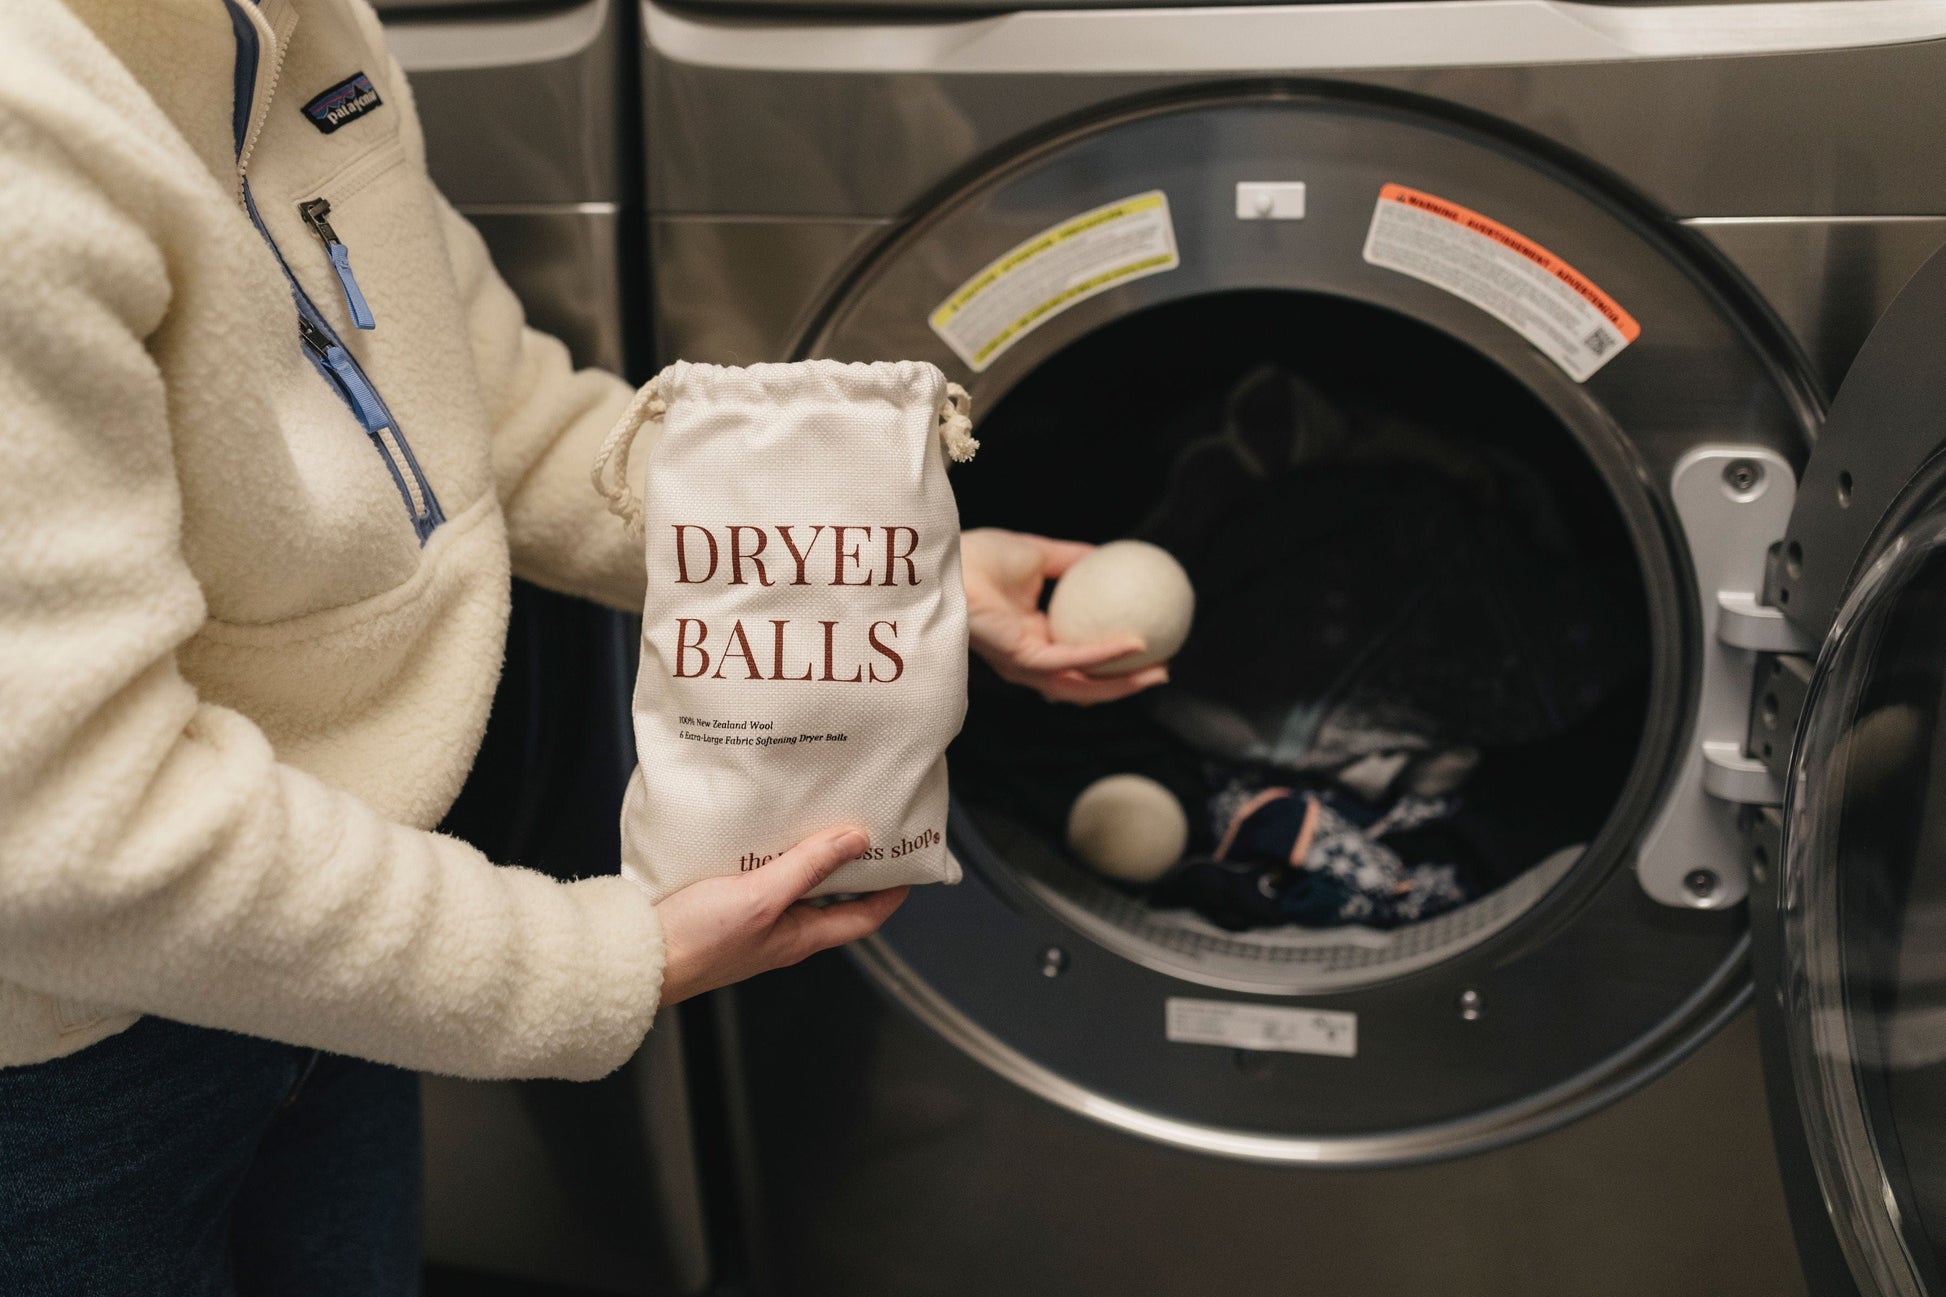 The Waste Less Shop WHOLESALE Dryer Balls